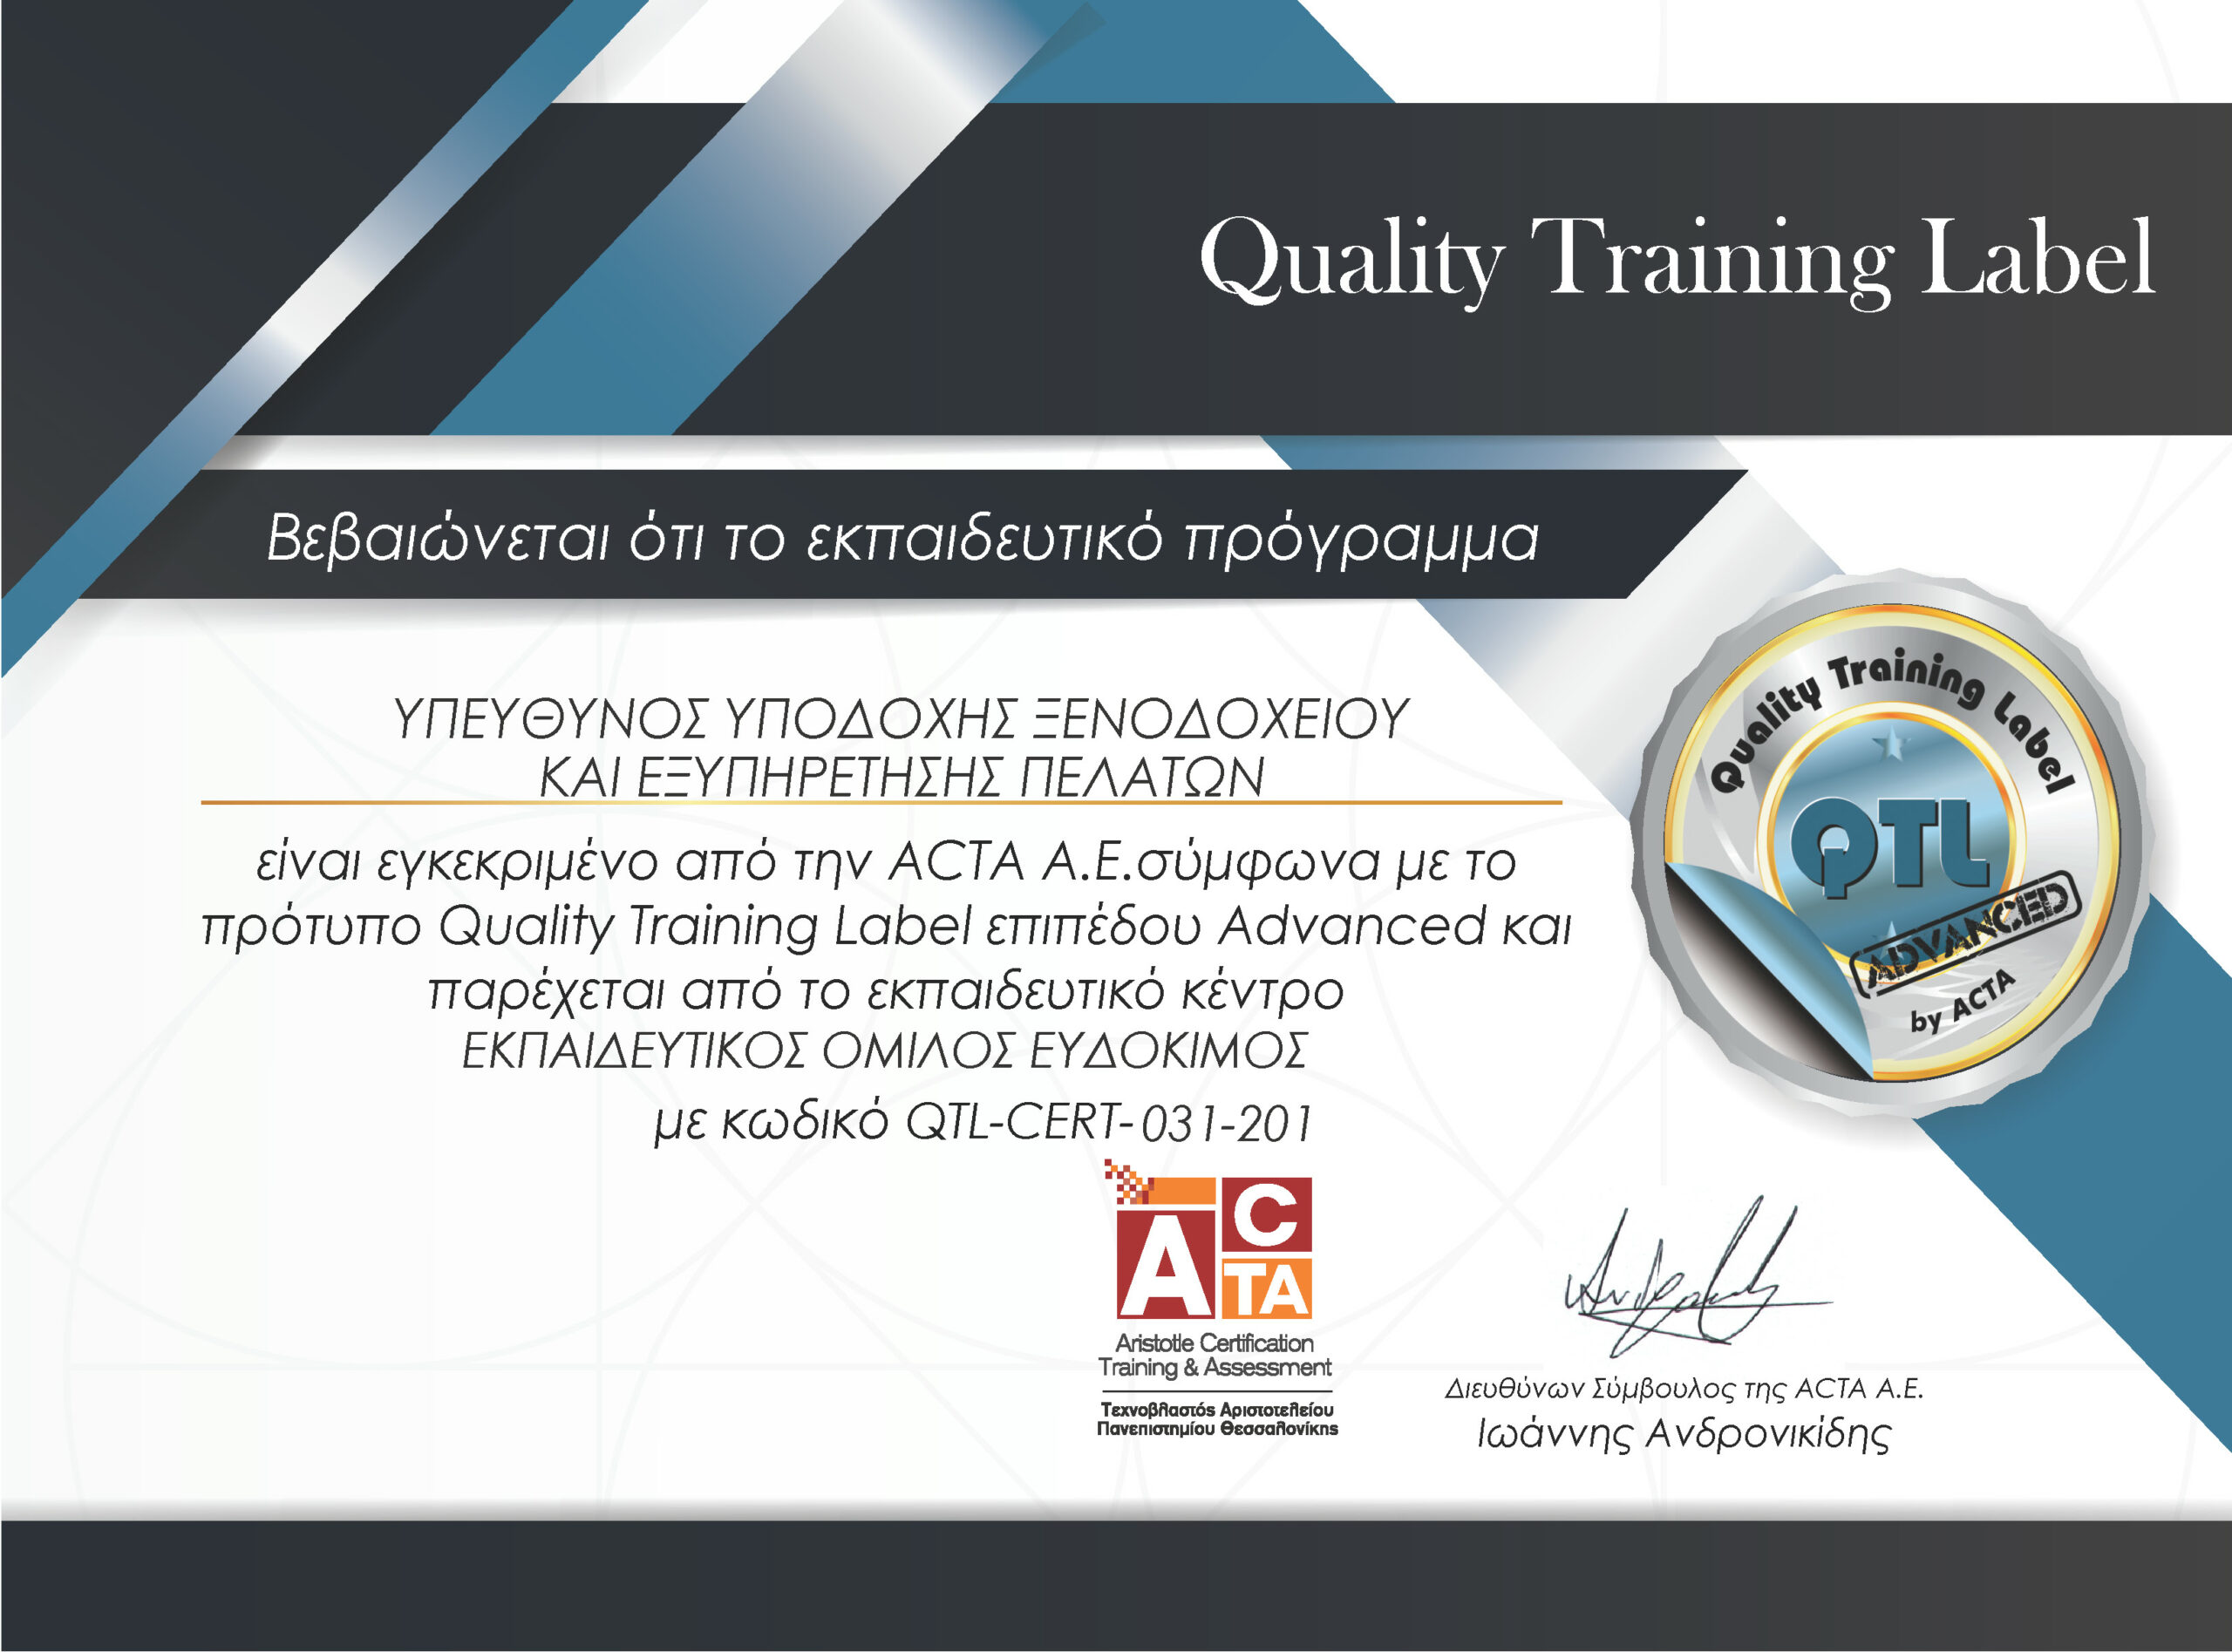 Υπεύθυνος υποδοχής ξενοδοχείου και εξυπηρέτησης πελατών - Πιστοποιημένο εκπαιδευτικό πρόγραμμα της ACTA σύμφωνα με το πρότυπο QTL επιπέδου Advanced